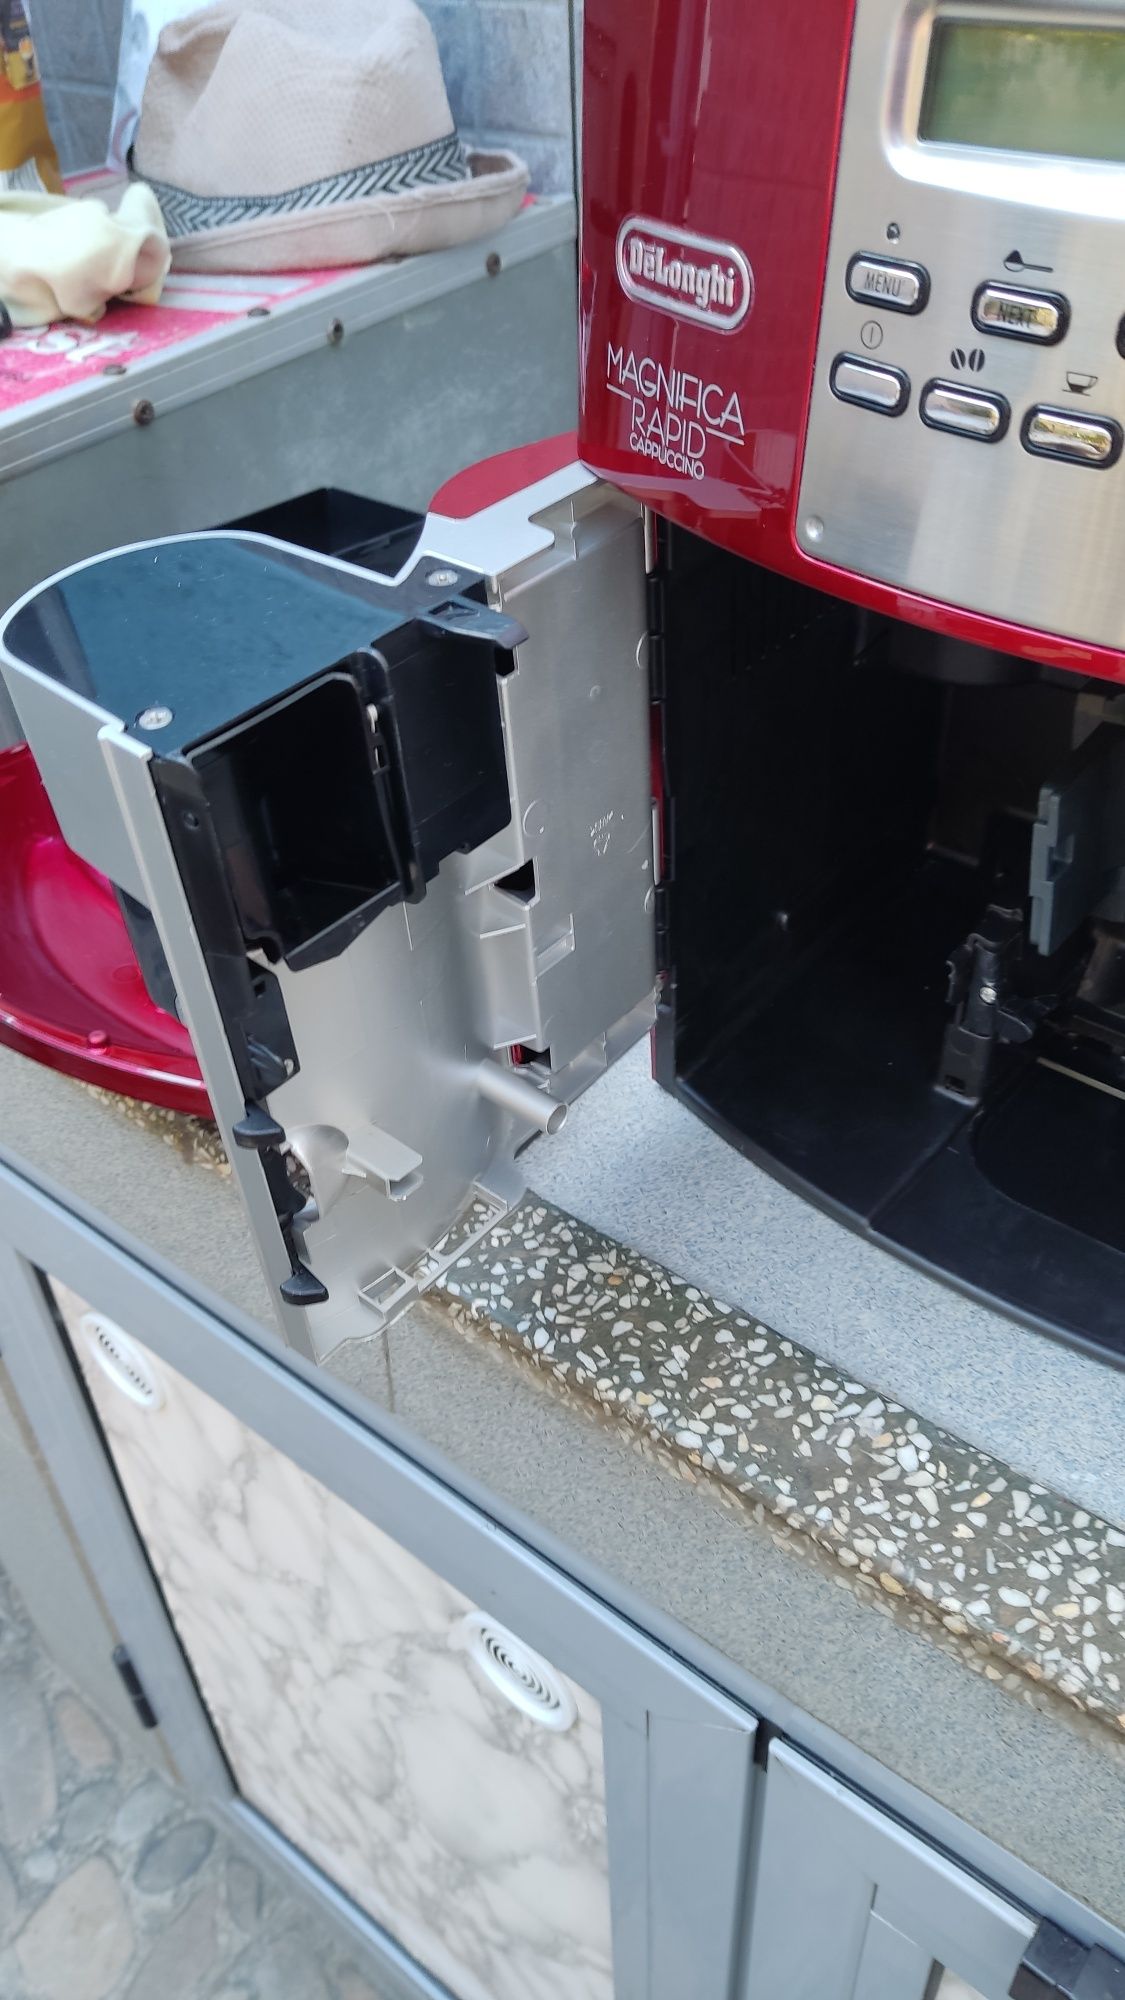 Кафе автомат Делонги магнифика рапид капучино внос от Германия